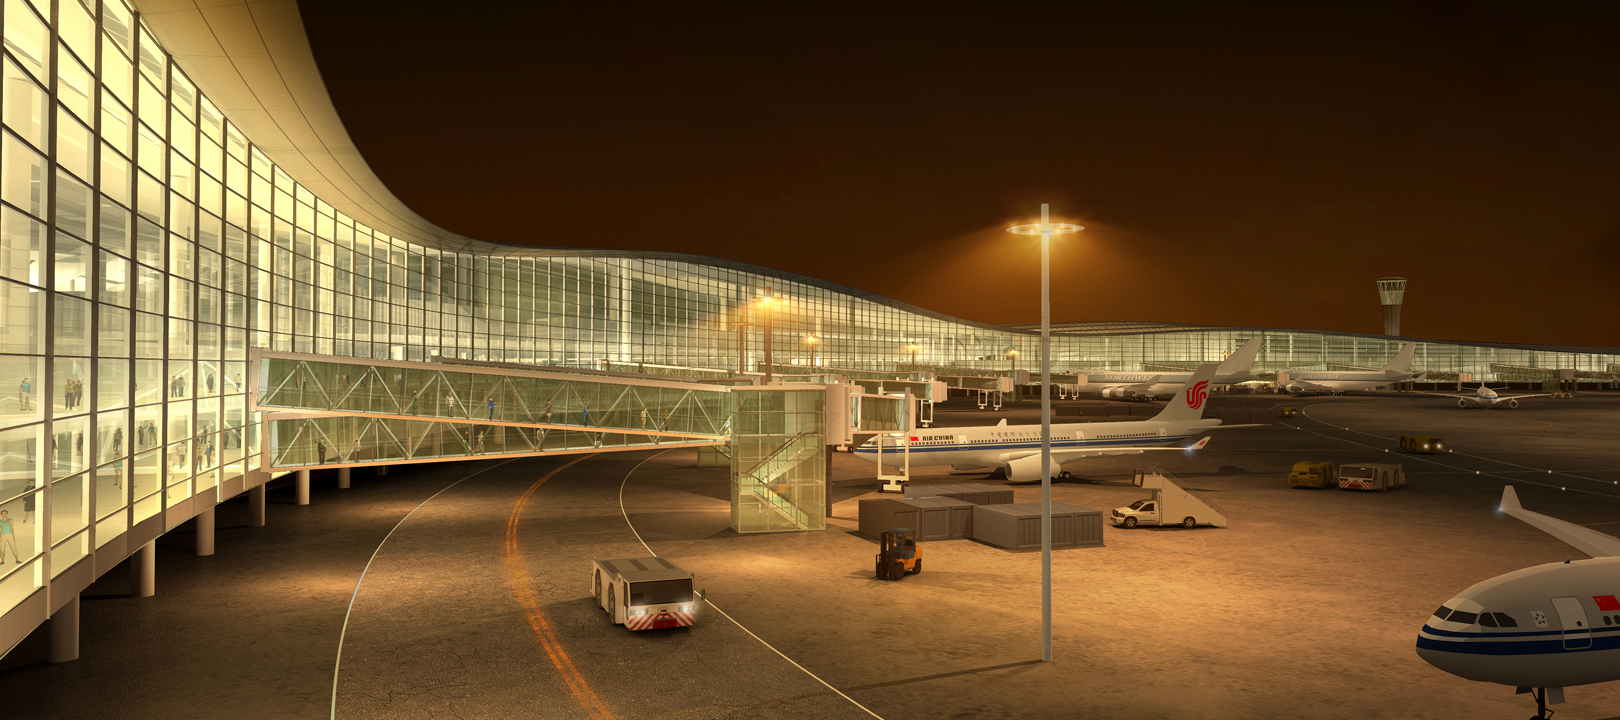 长沙黄花国际机场t3航站楼规划入围候选方案